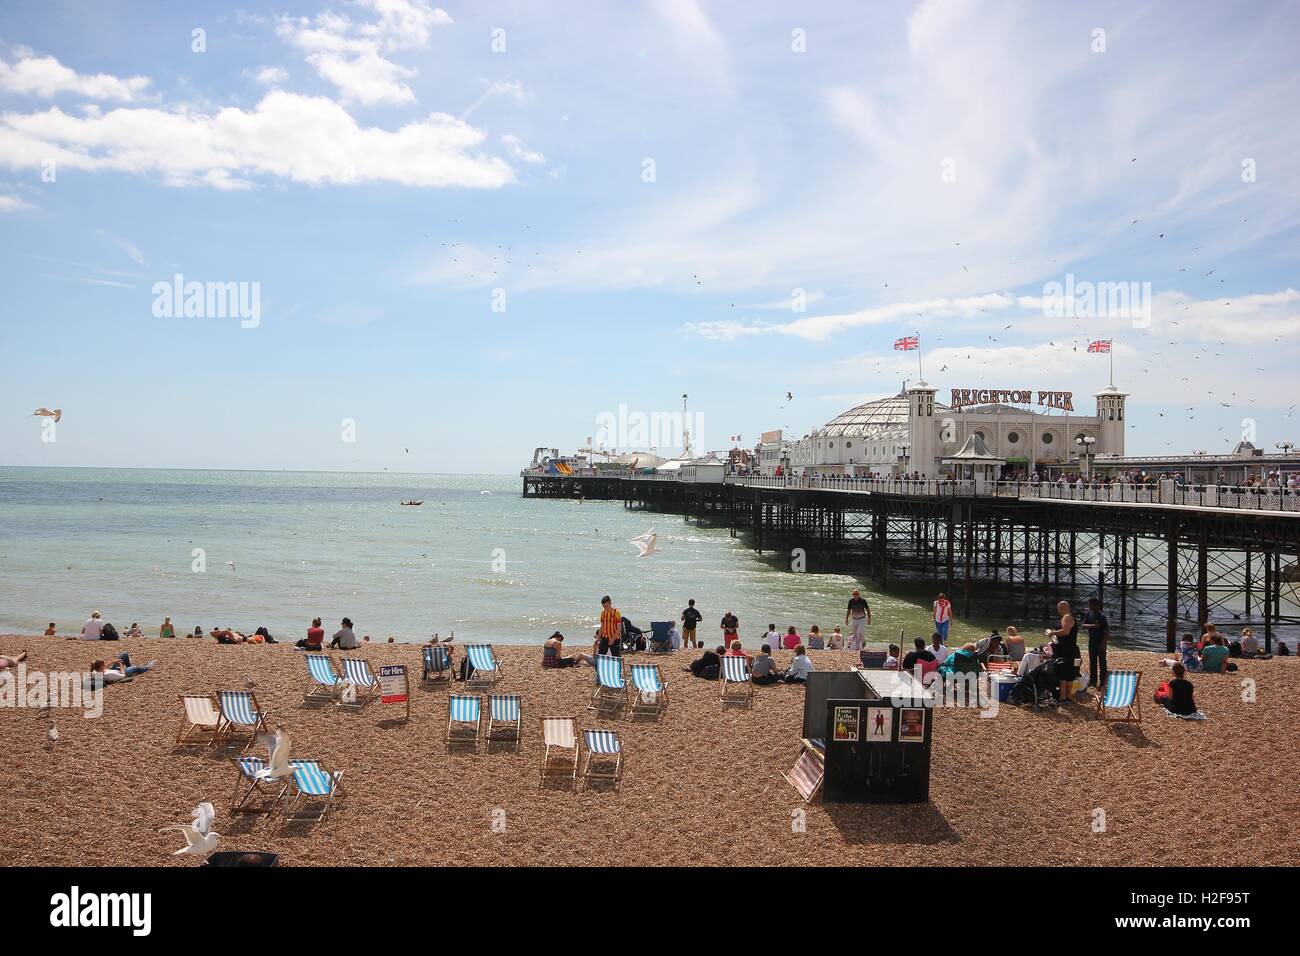 Die berühmte Brighton Pier an einem schönen sonnigen Tag, England, Meer, Sommer, touristische Attraktion von Brighton, Vergnügungen Zentrum Stockfoto